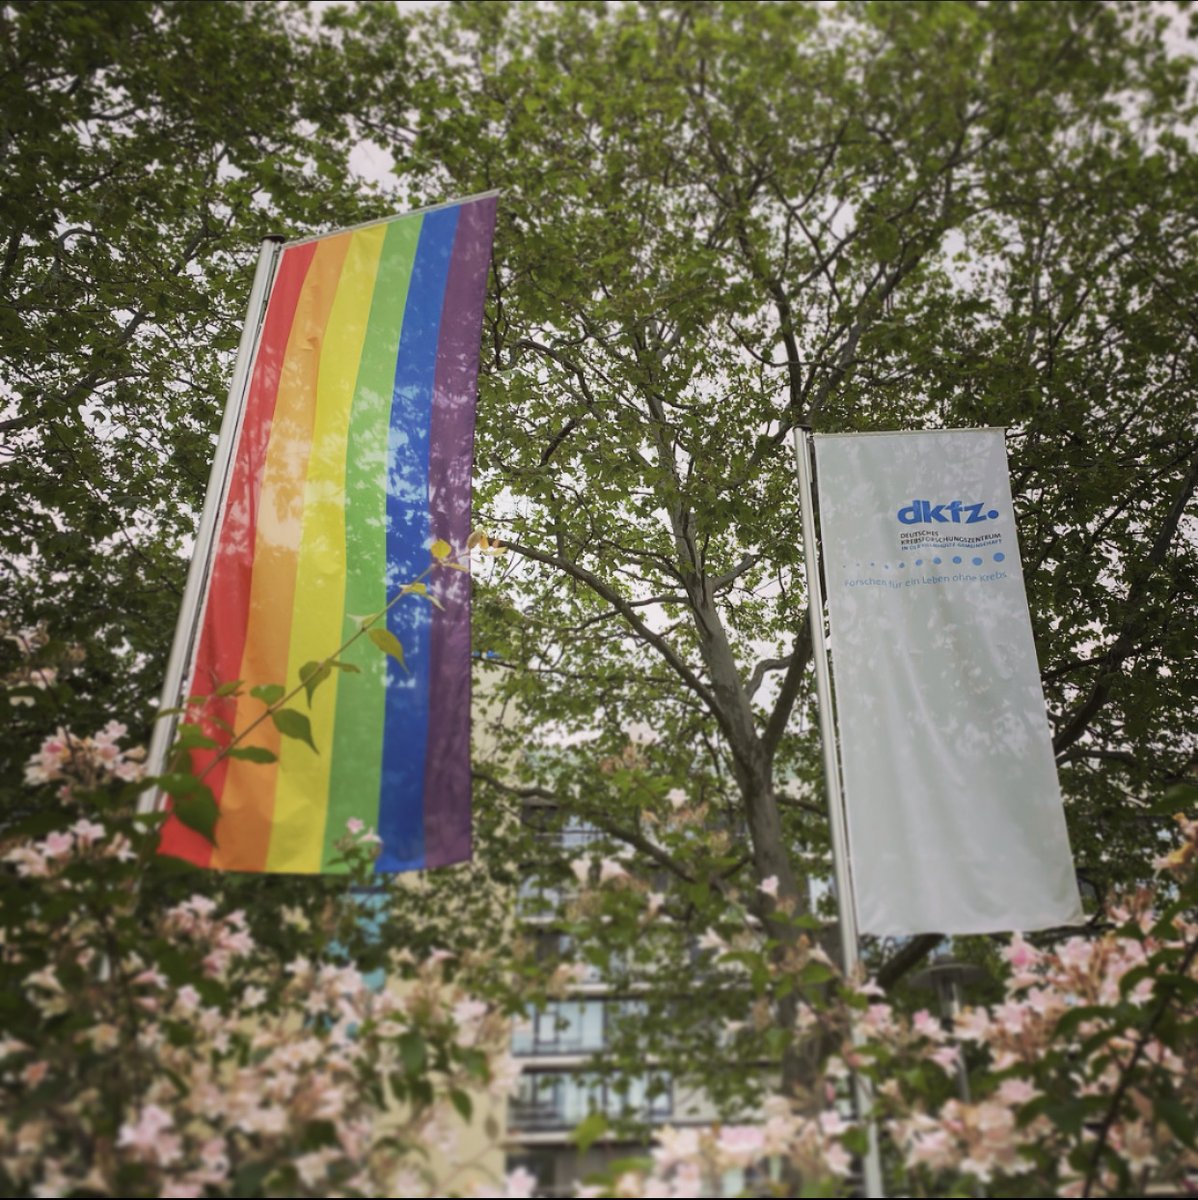 🏳️‍🌈Das DKFZ zeigt Flagge für Toleranz und Vielfalt
Anlässlich des diesjährigen Deutschen #DiversityTag am 23. Mai hisst das DKFZ eine Regenbogenflagge als symbolische Geste, um das Bewusstsein für Vielfalt und Inklusion zu stärken. #HelmholtzDiversity #FlaggefuerVielfalt #DDT23